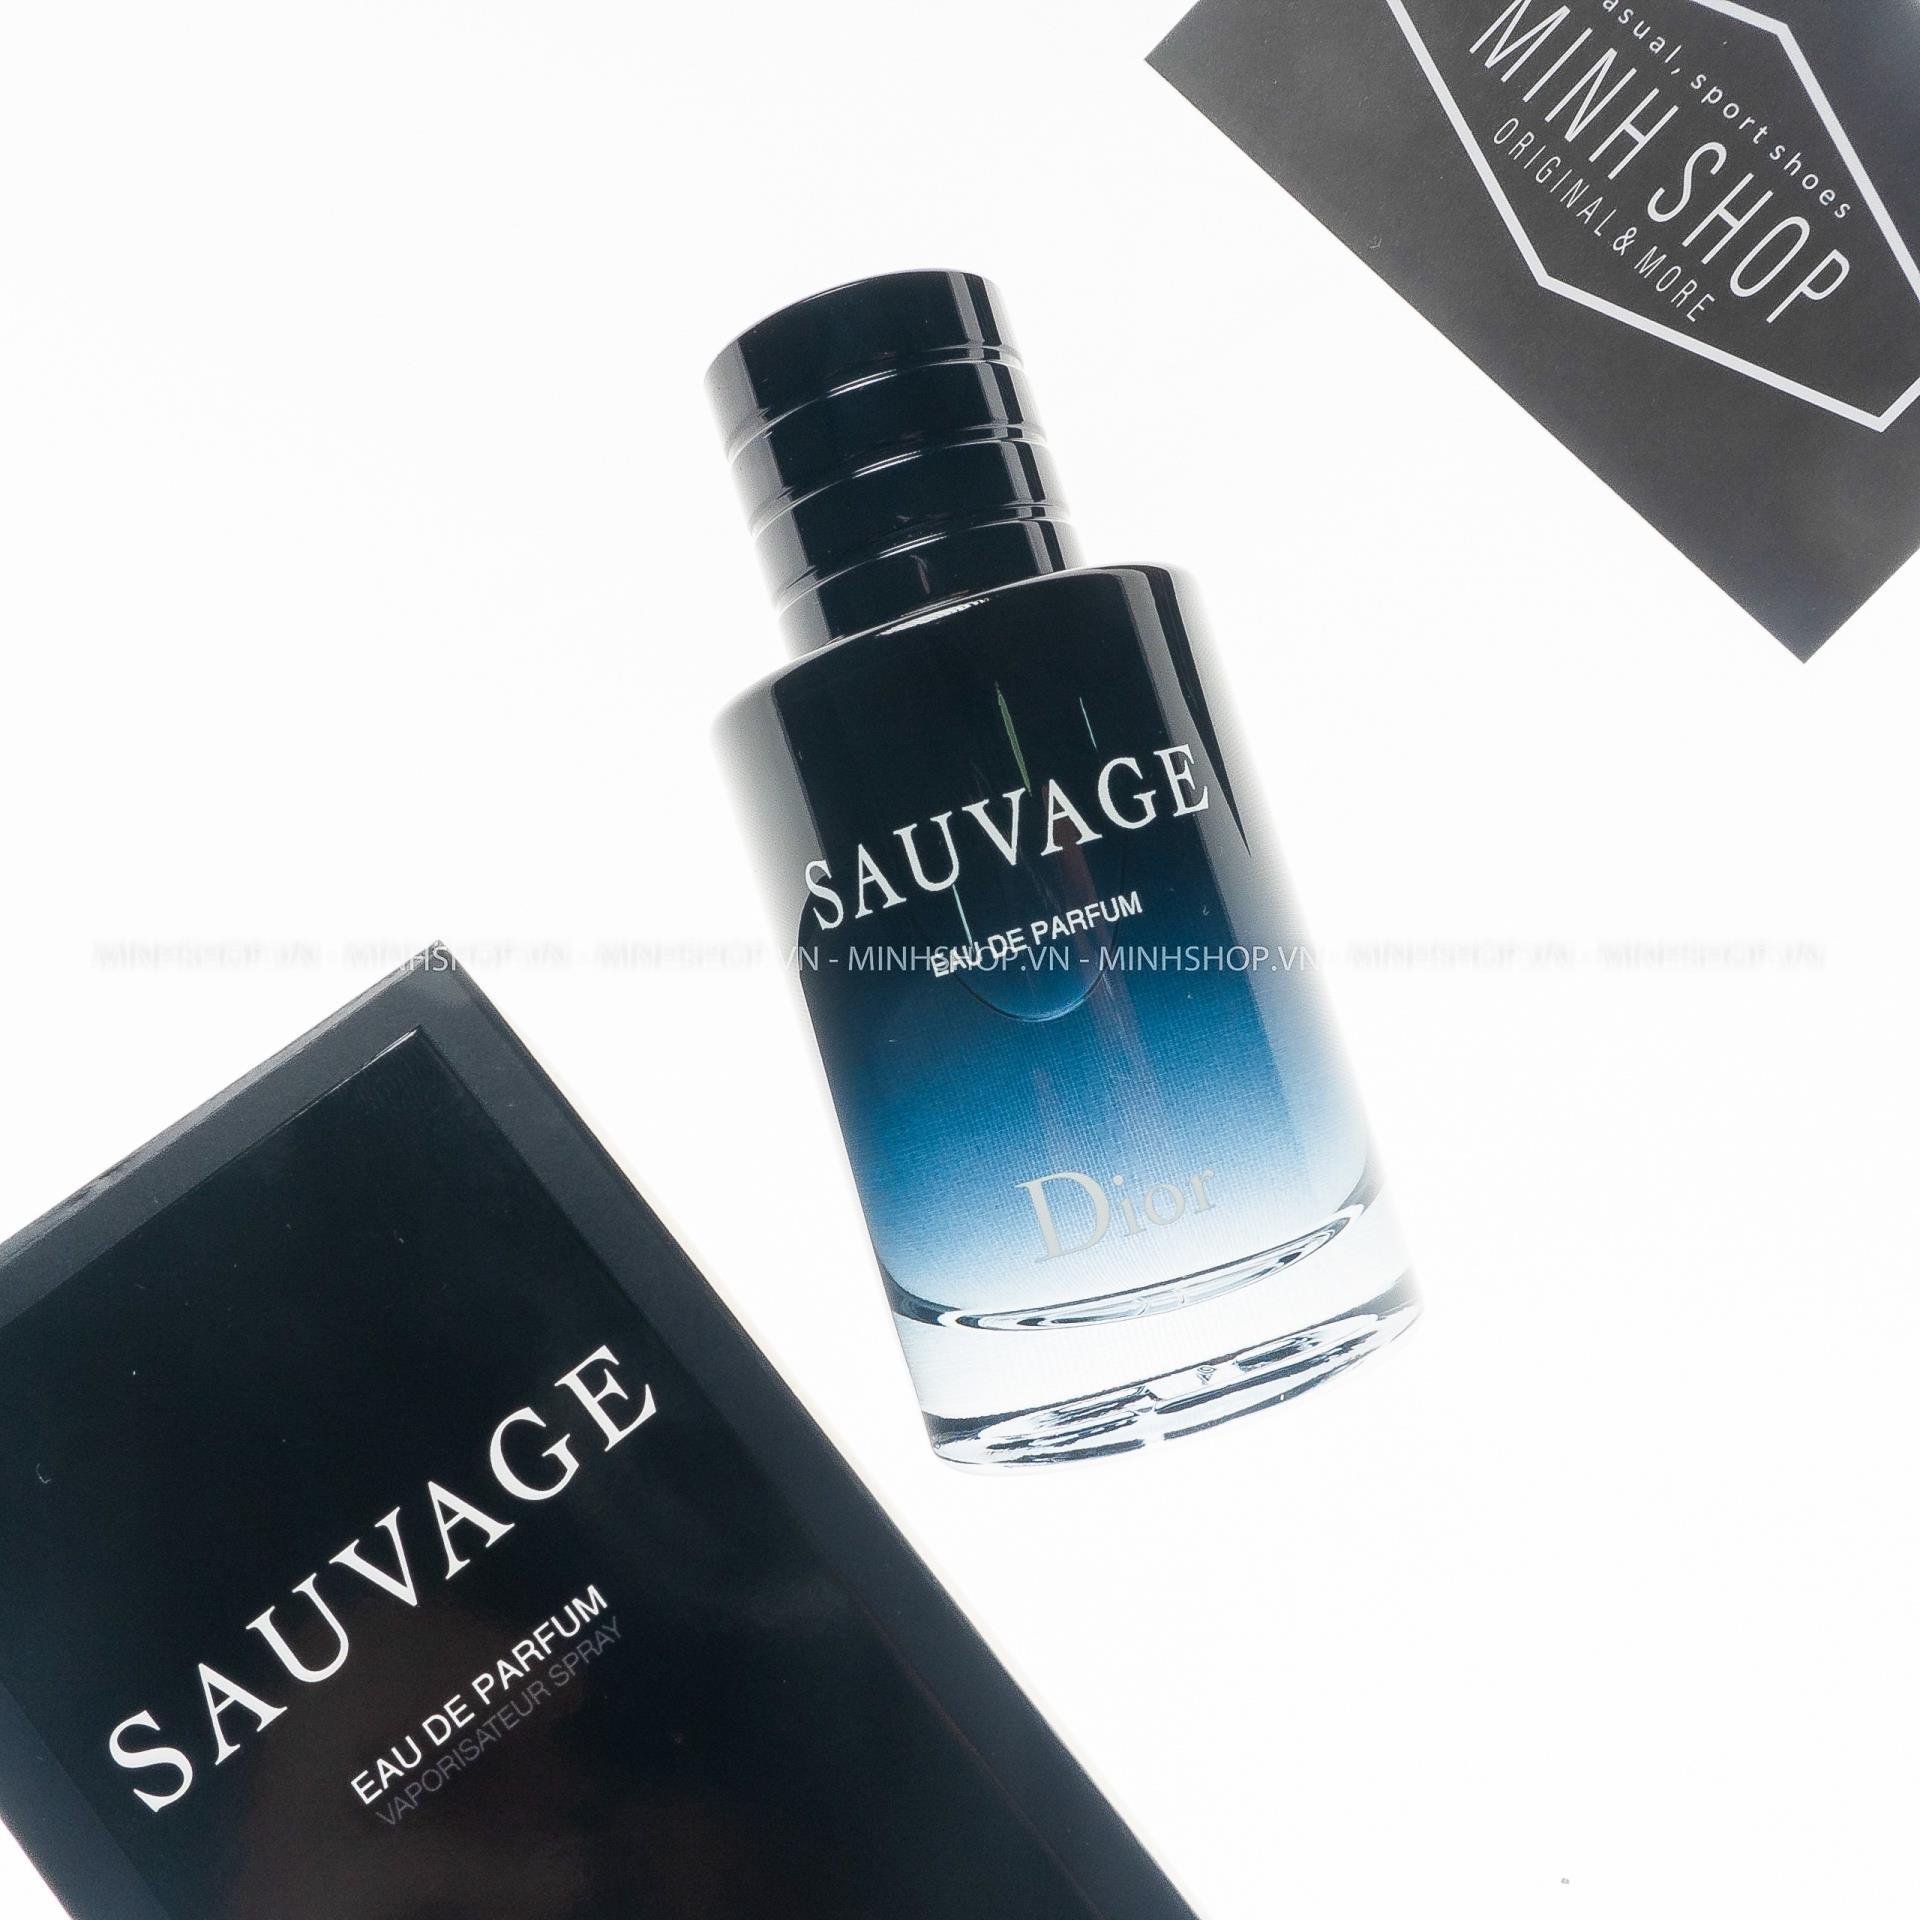 Nước hoa nam Dior Sauvage Parfum 100ml  Tester Mỹ phẩm Minh Thư  Hàng  ngoại nhập 1